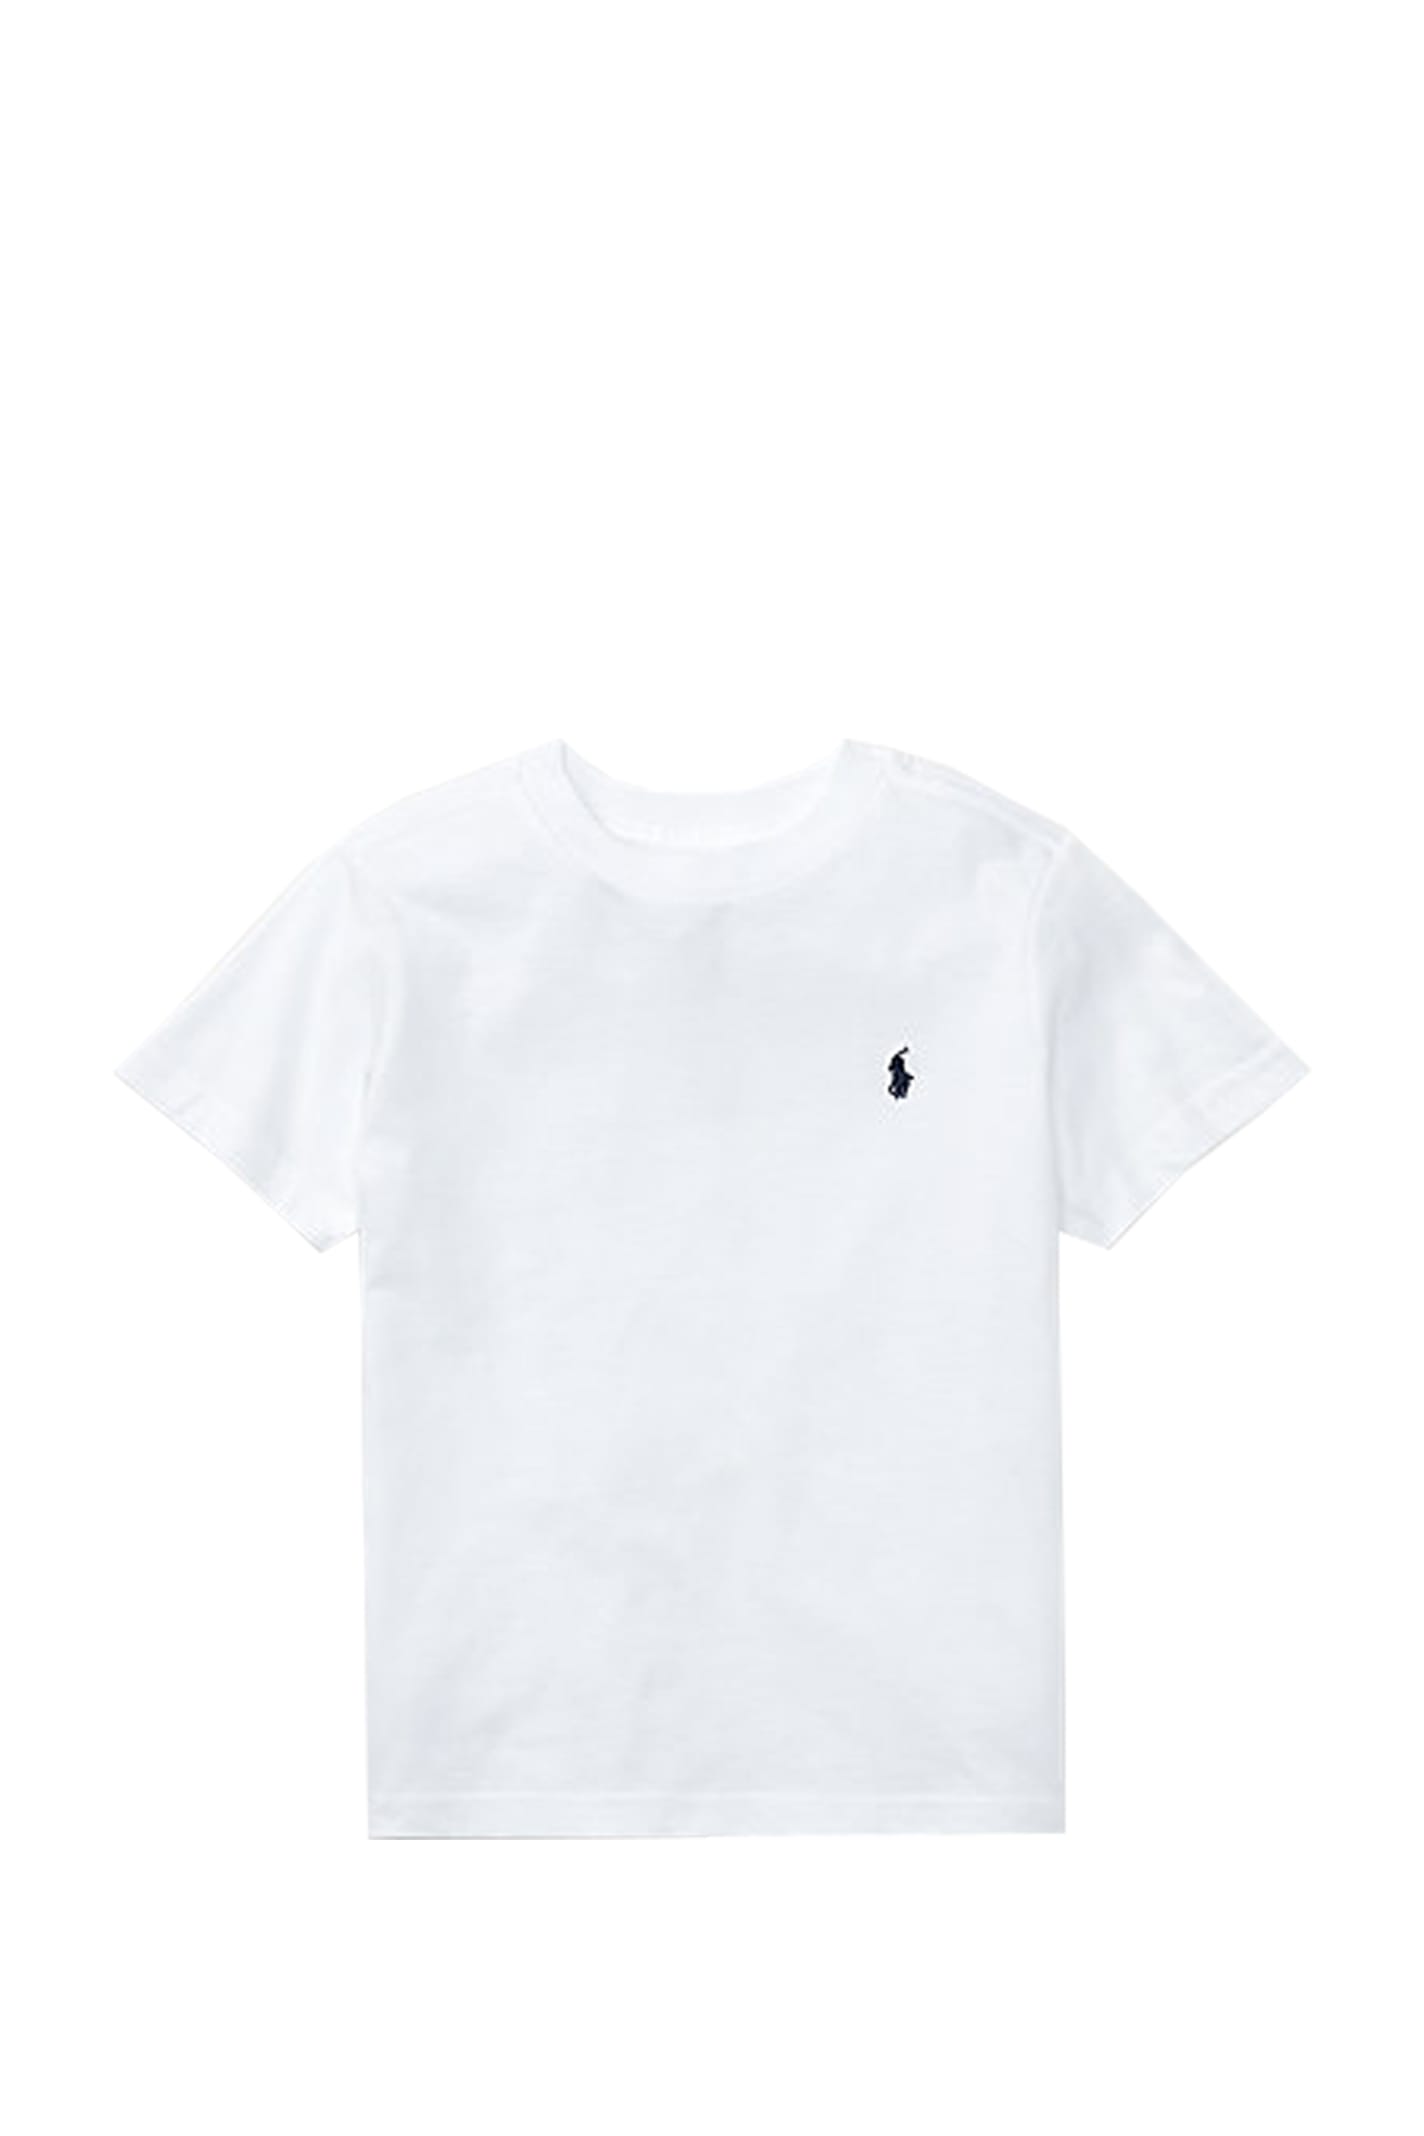 Ralph Lauren Kids' Crew Neck T-shirt In Cotton Jersey In White